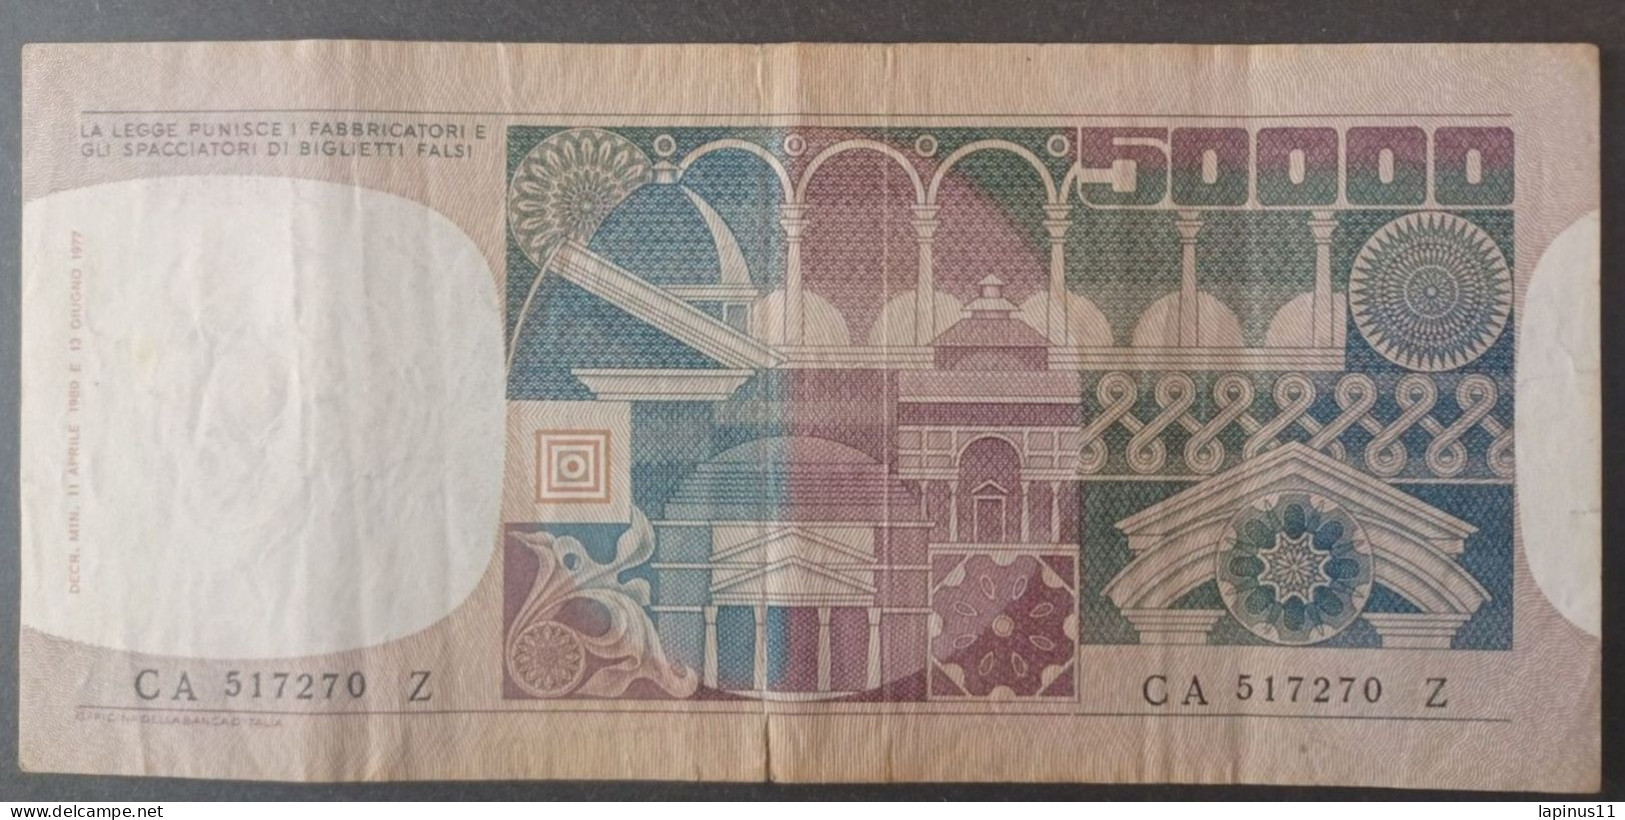 BANKNOTE ITALY 50000 LIRE 1980 CIAMPI STEVANI CIRCULATED - 50.000 Lire